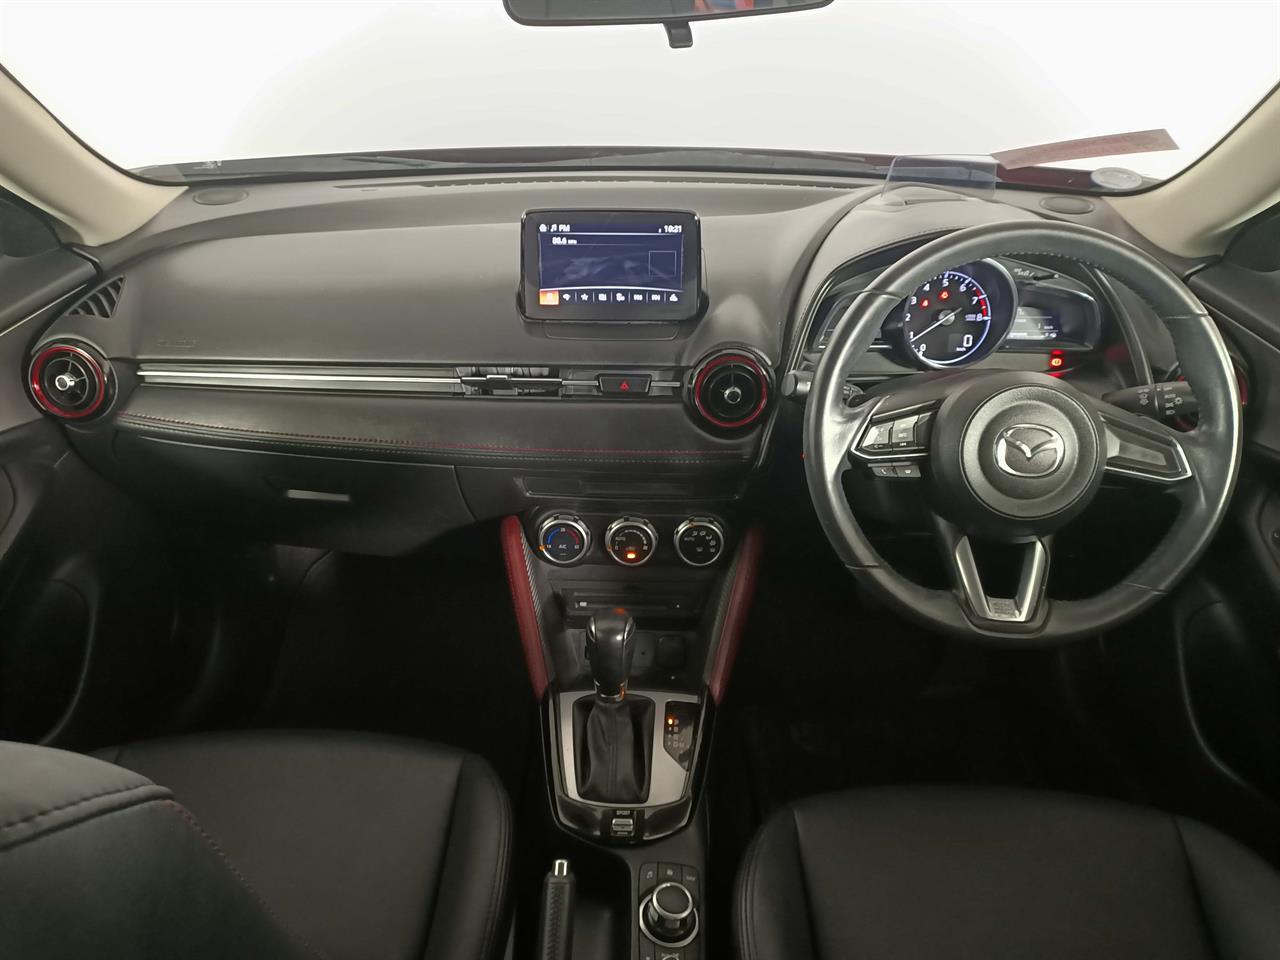 2018 Mazda CX-3 20S proactive